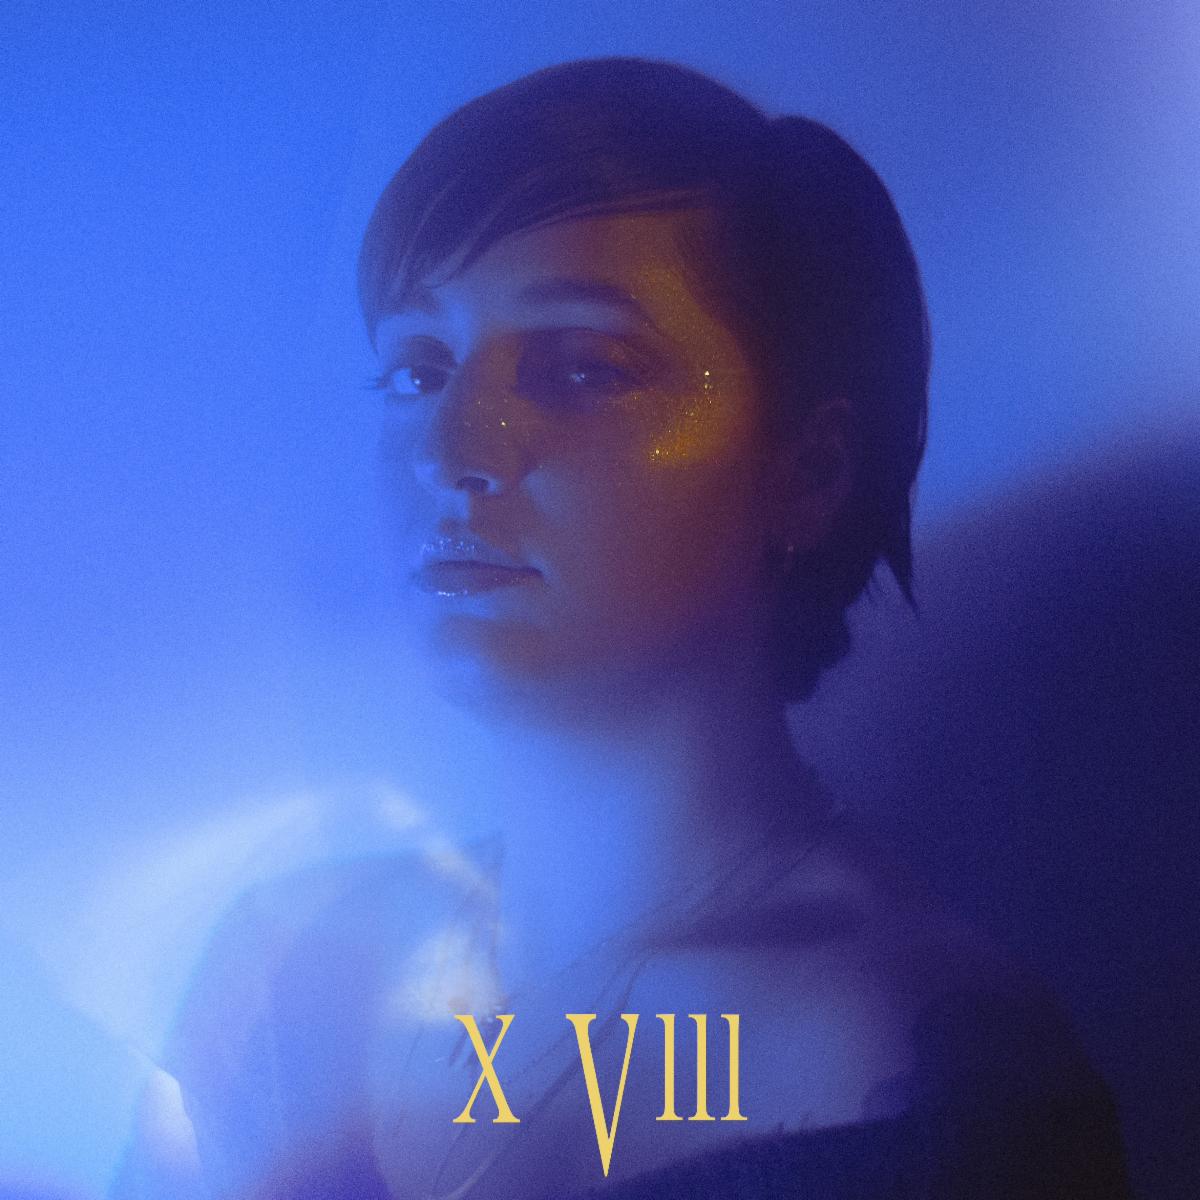 MVR esce dagli schemi con “X VIII”, terzo singolo che strizza l’occhio al post-rock